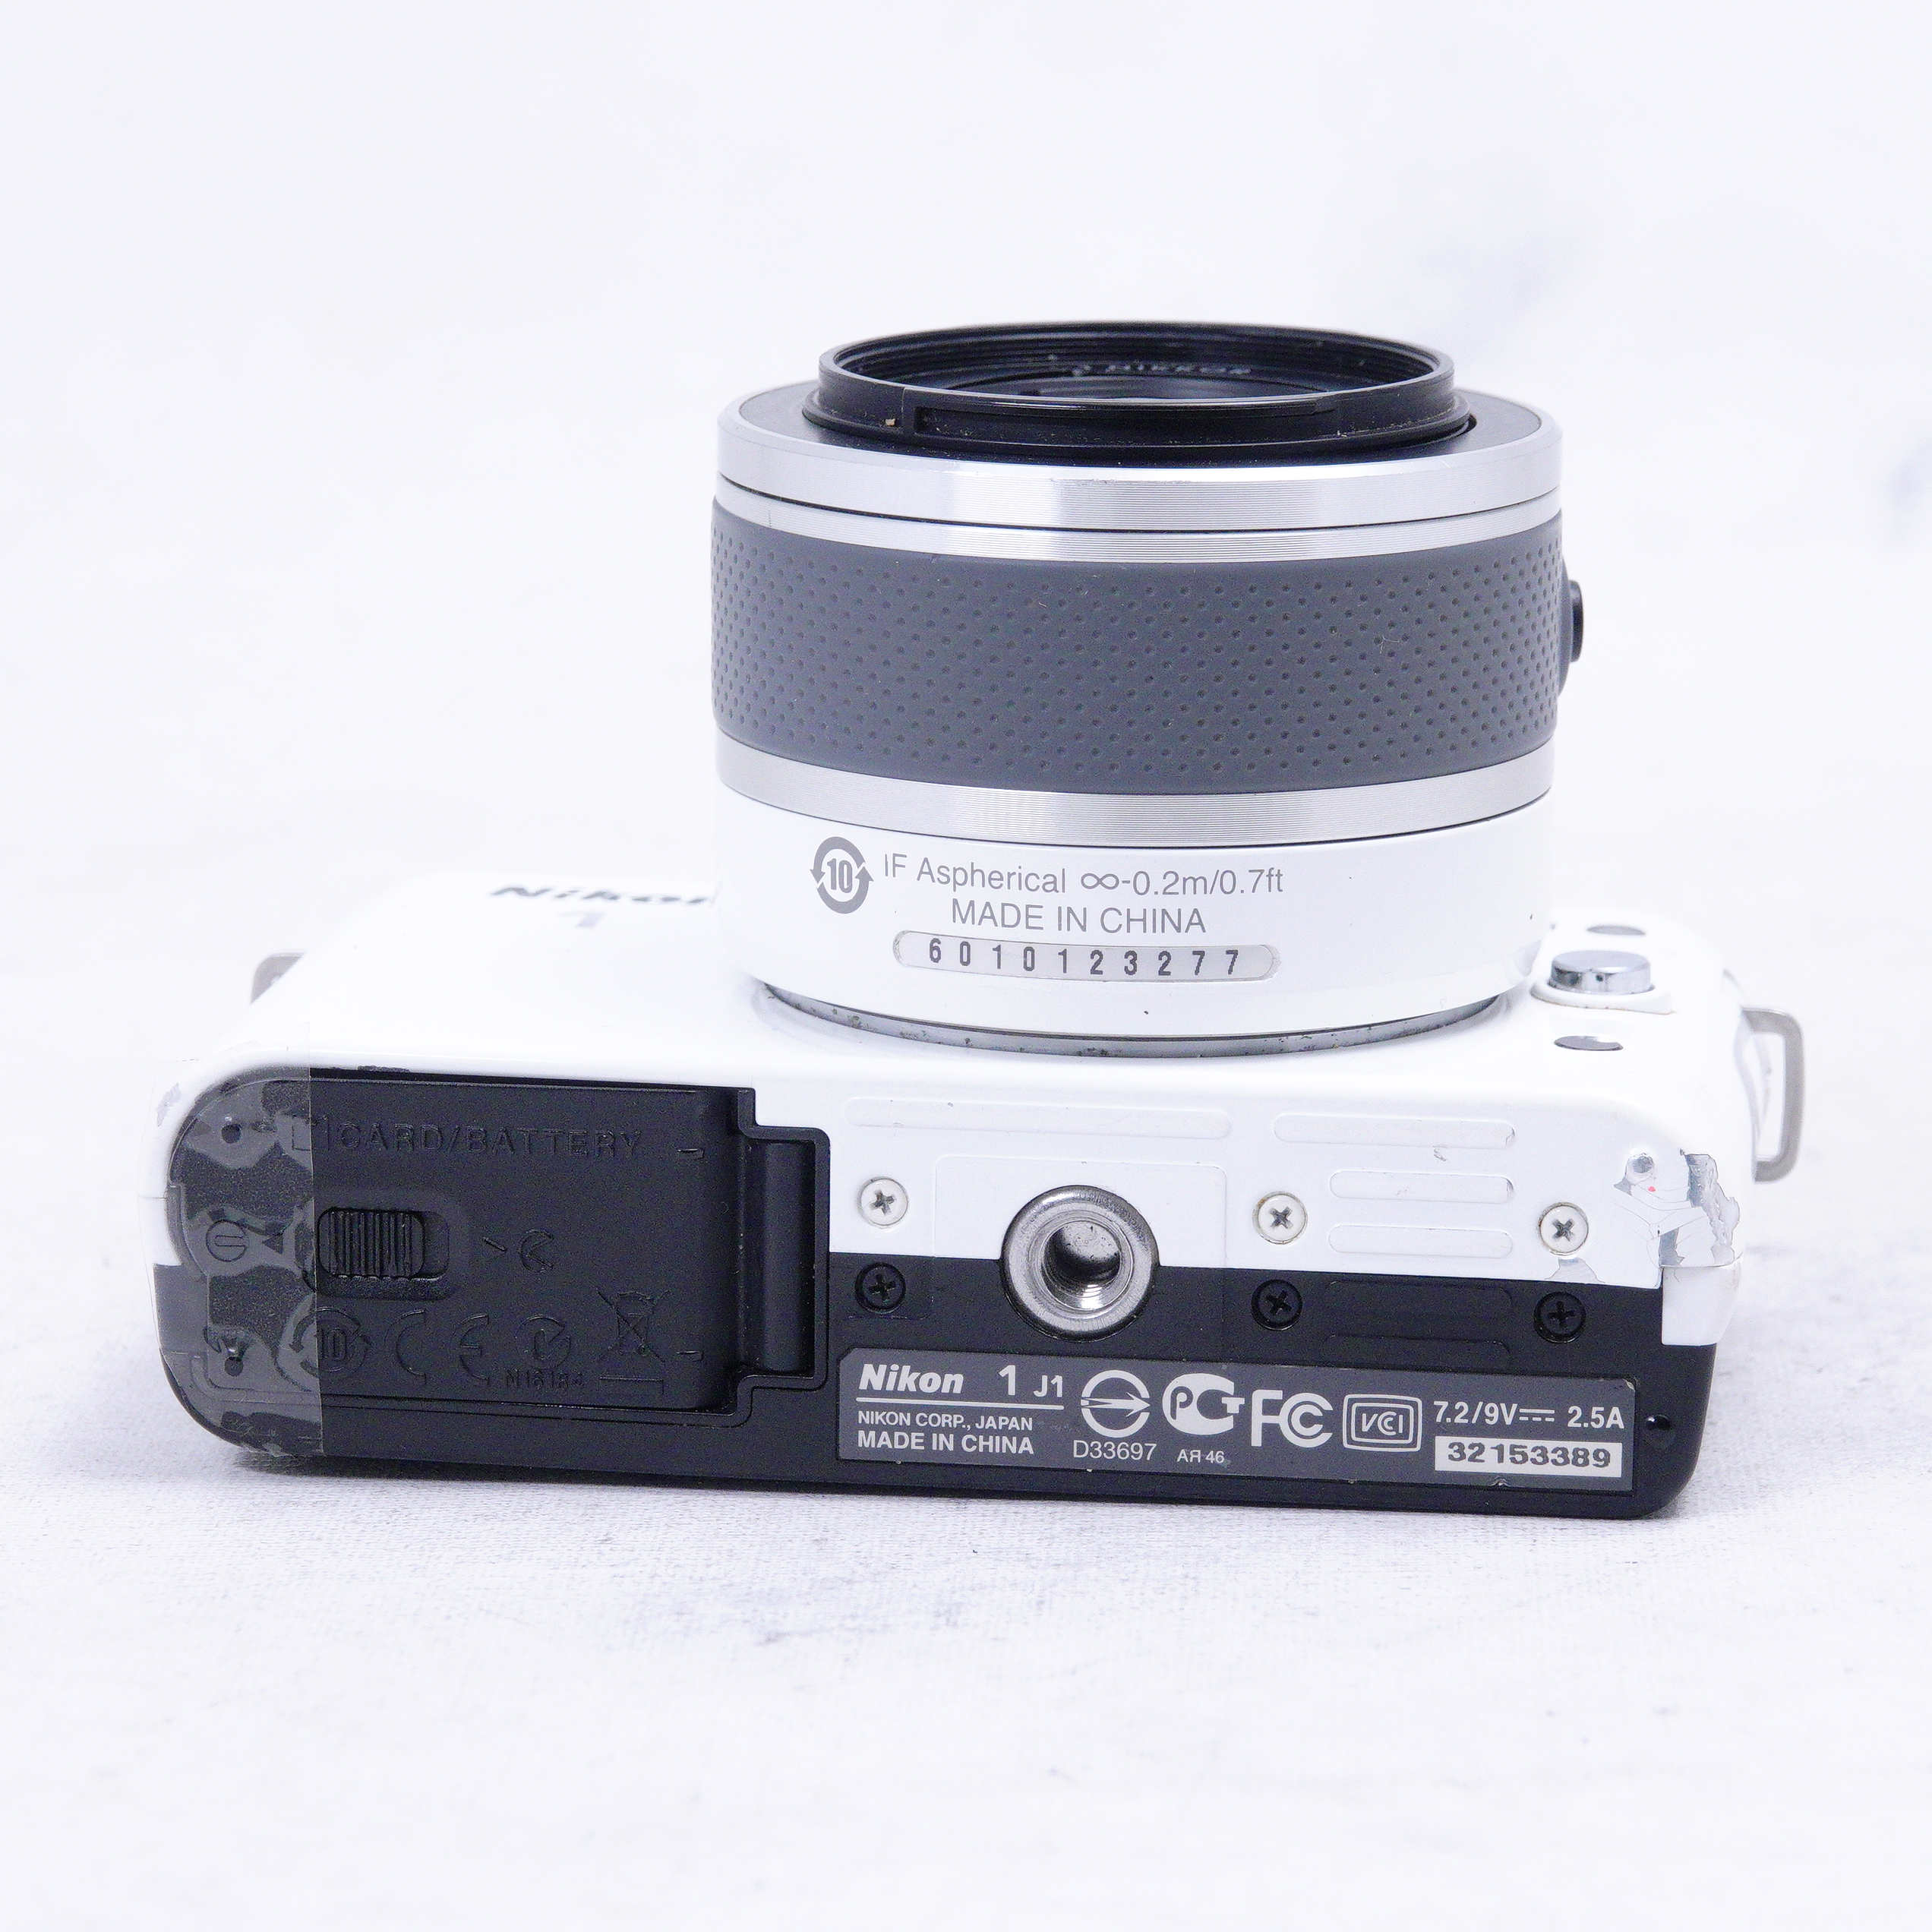 Nikon 1 J1 con lente zoom VR de 10-30mm (detalle) - Usado